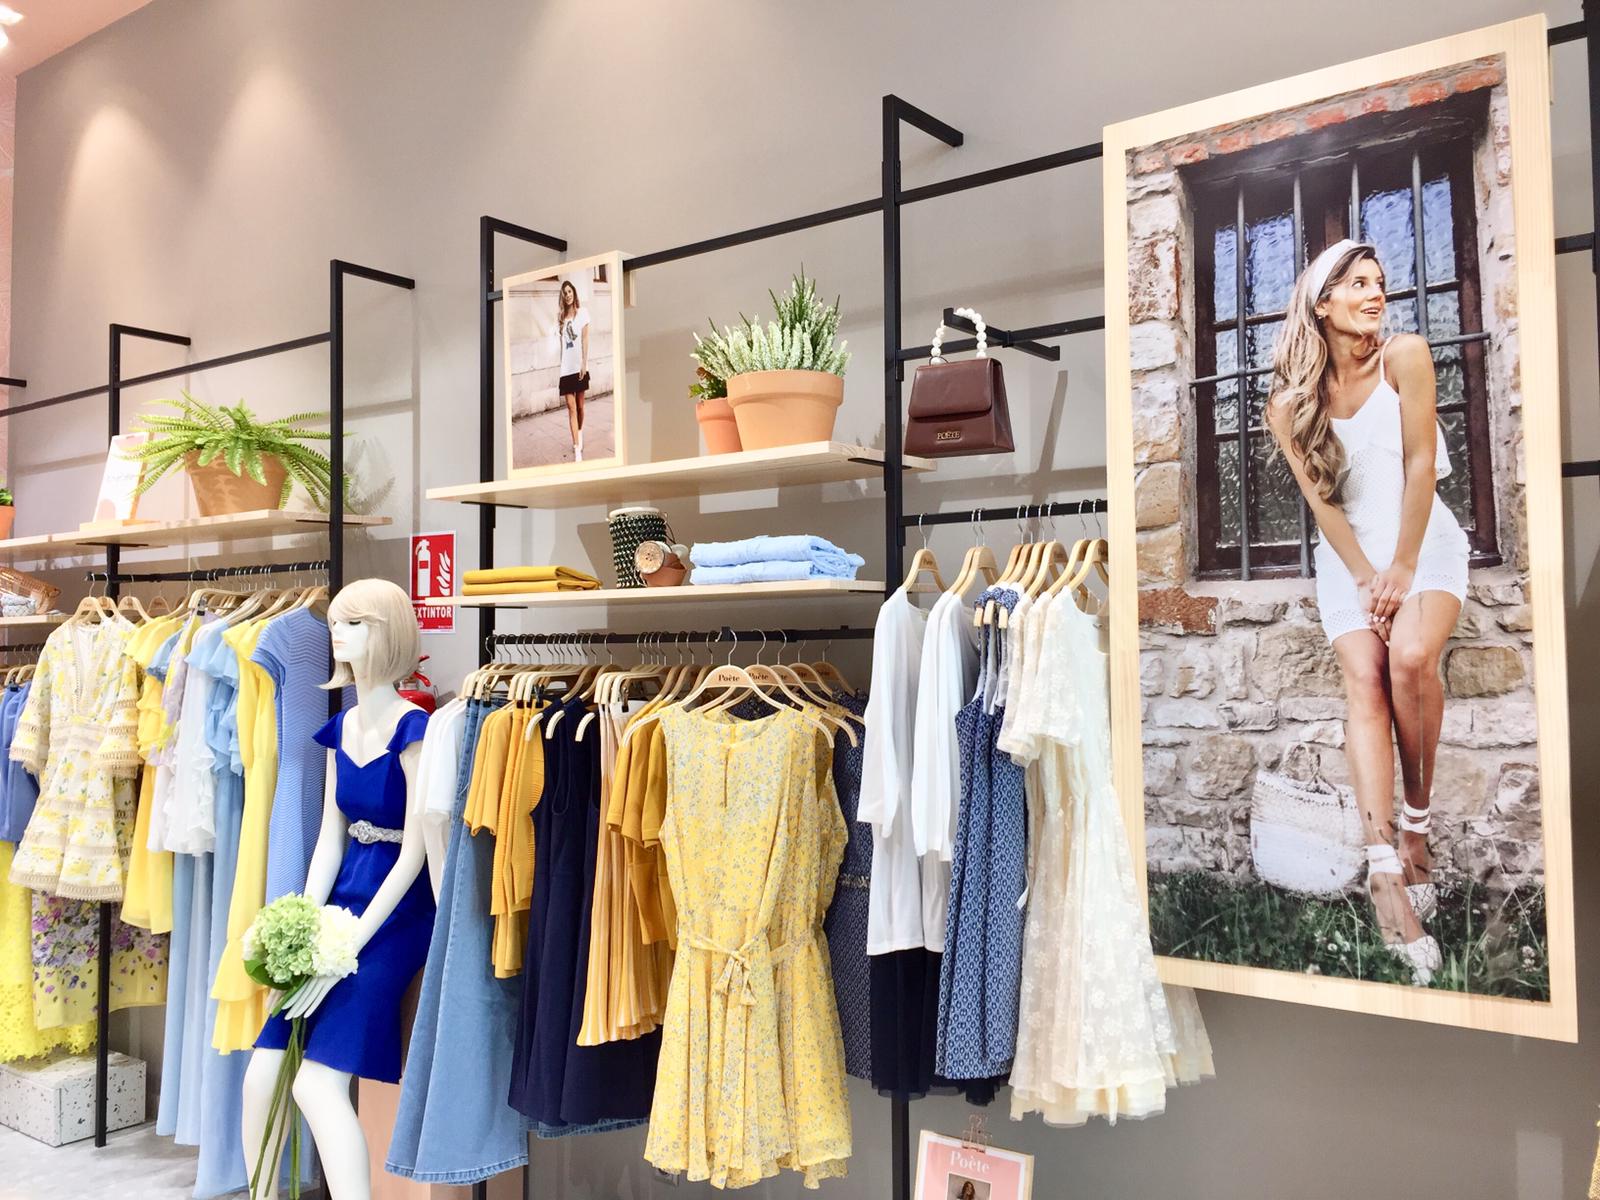 Poète inaugura su tienda propia - Revista Centros Comerciales